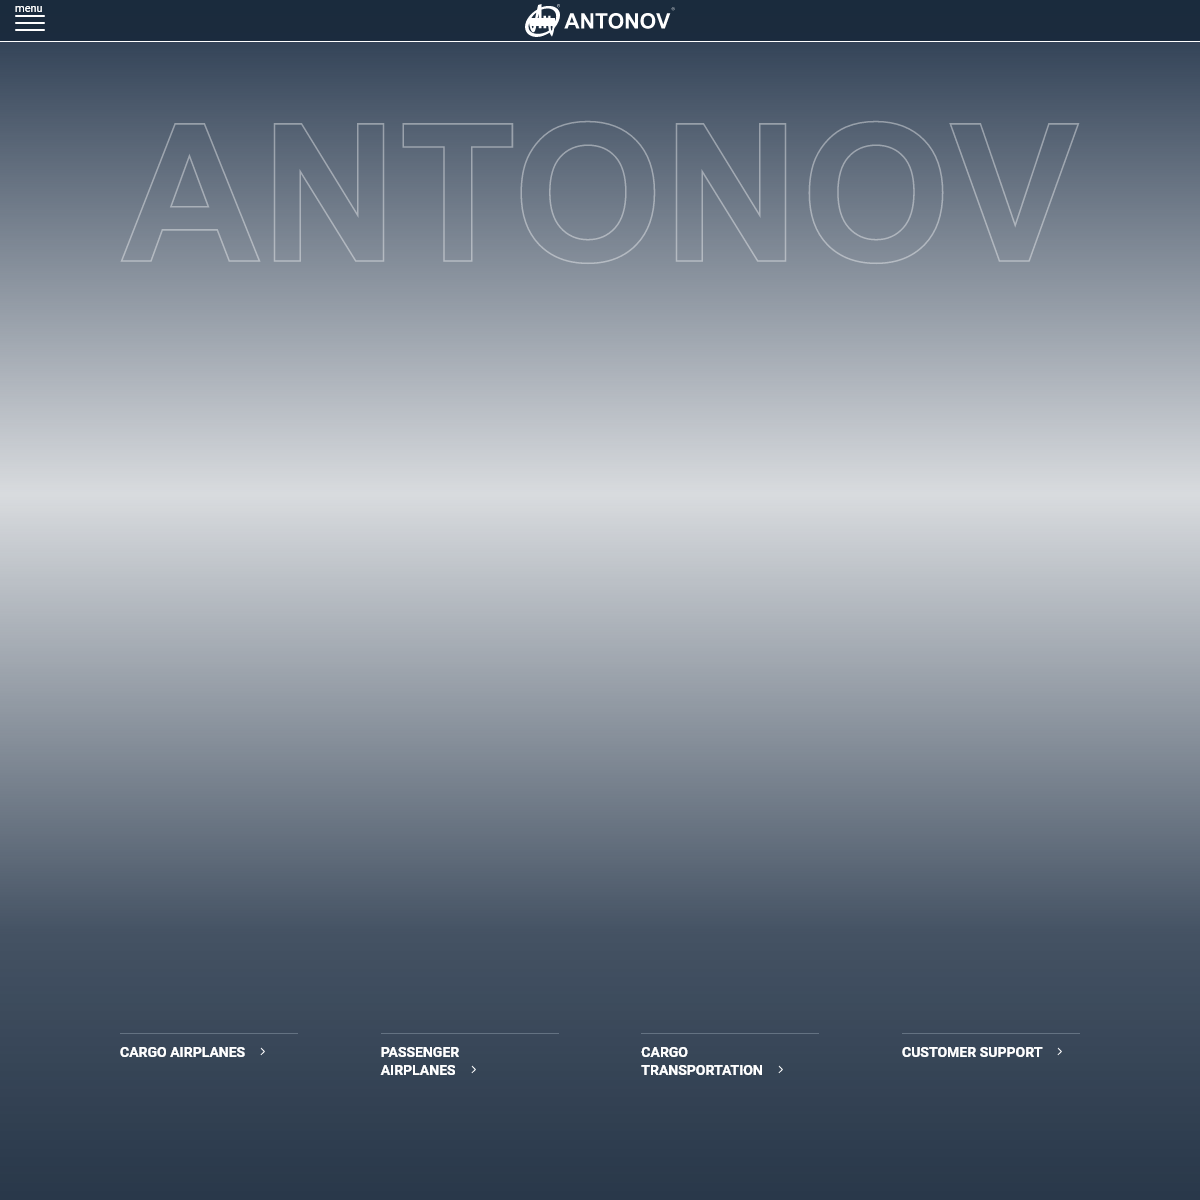 A complete backup of antonov.com